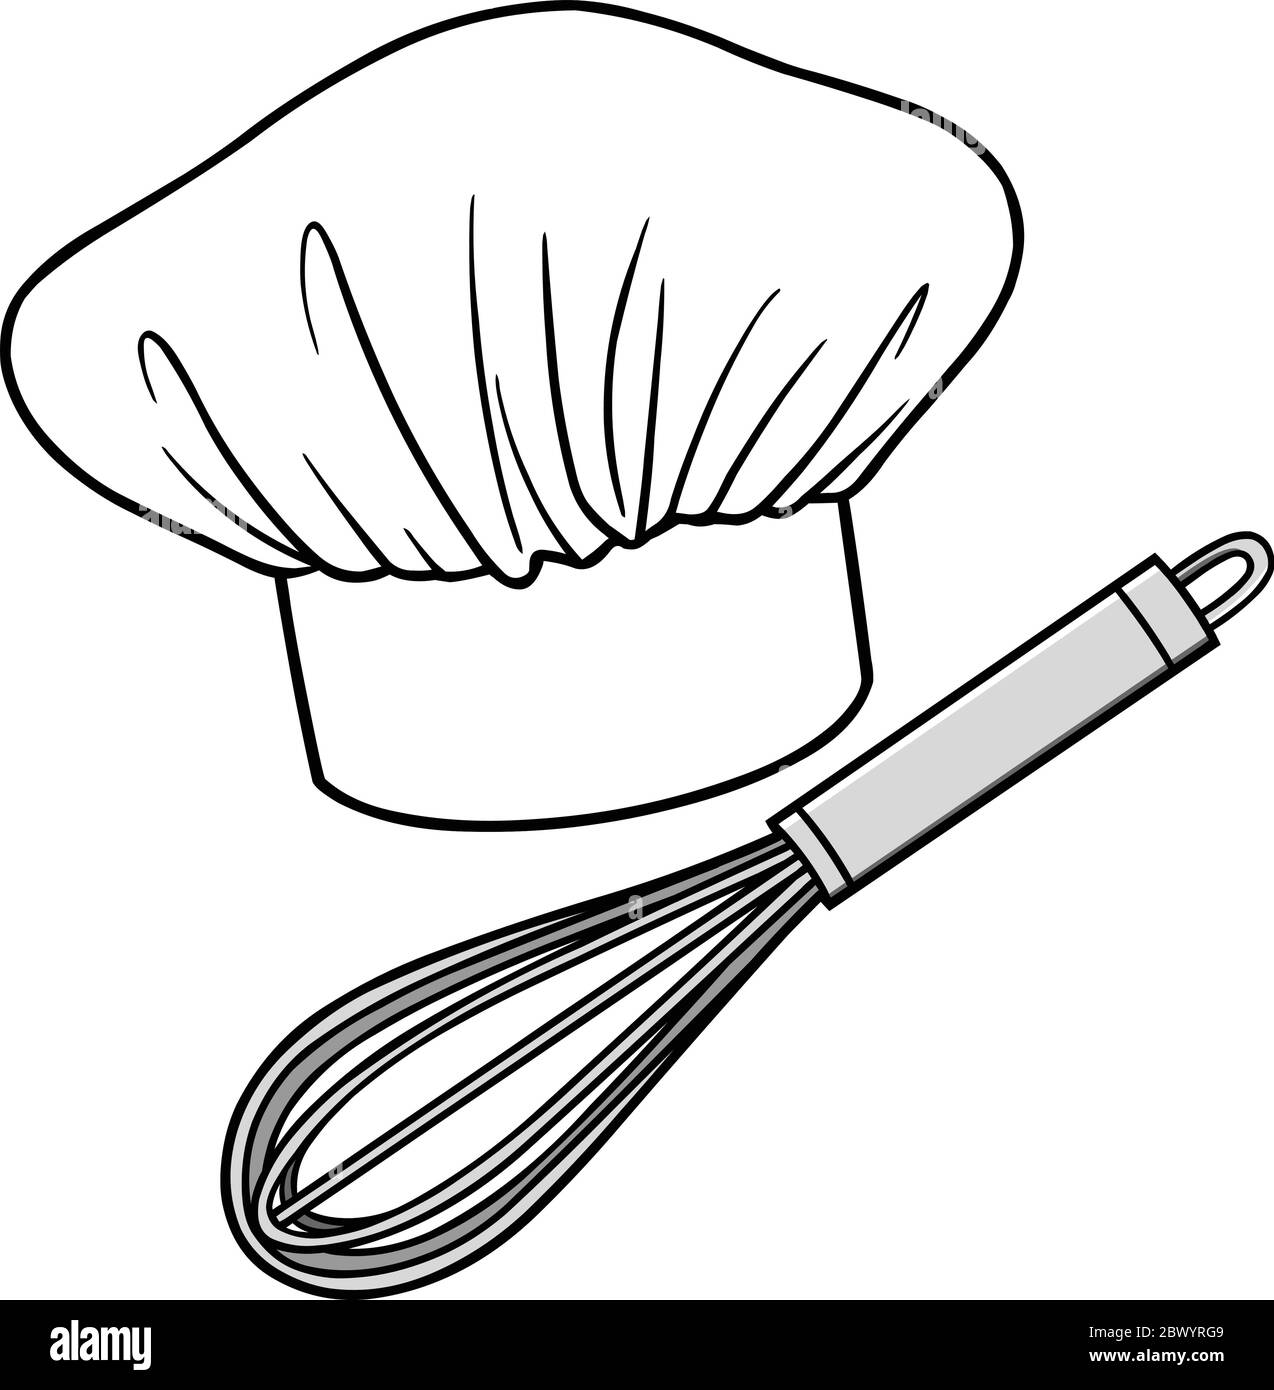 Kochmütze und Schneebesen – eine Illustration von Kochmützen und Schneebesen. Stock Vektor